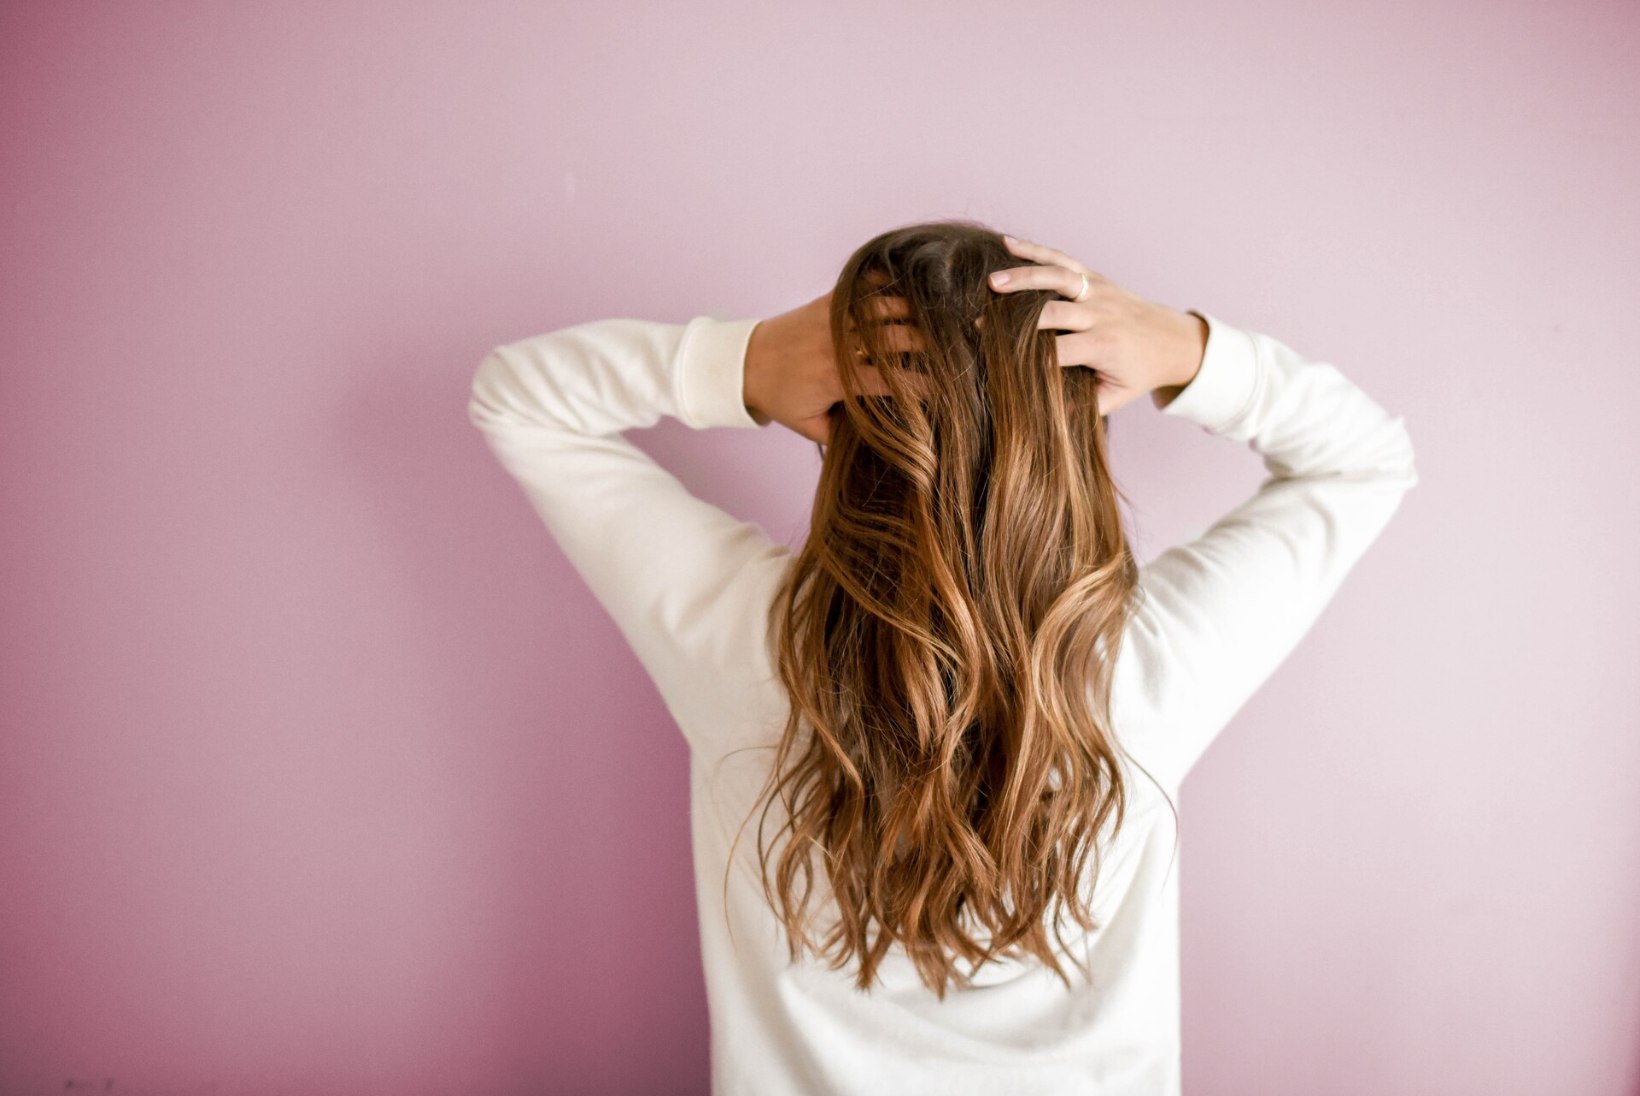 JUUKSED KIIRELT KORDA! Imelihtne test aitab leida õige juuksehooldusvahendi